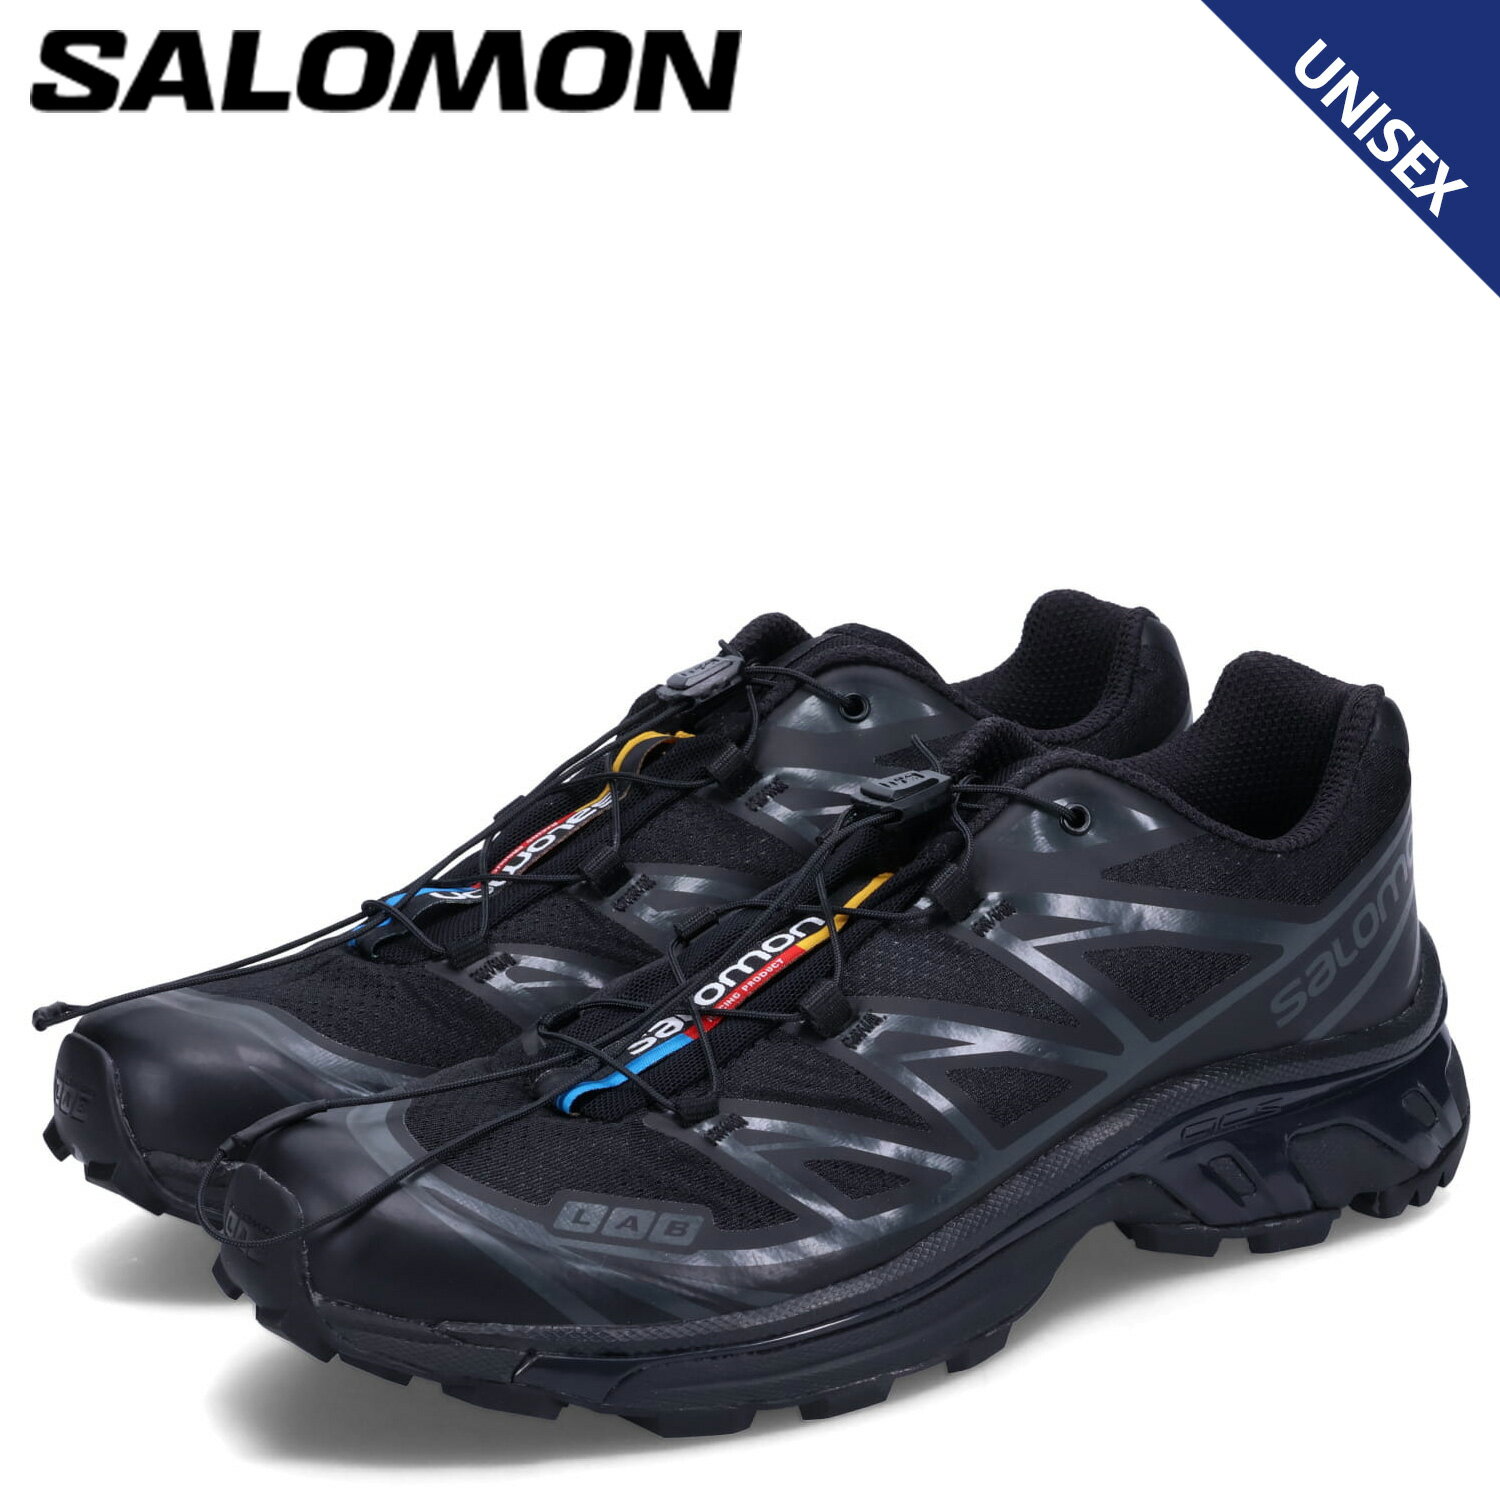 SALOMON サロモン XT-6 ADV シューズ トレッキングシューズ スニーカー メンズ レディース ブラック 黒 L41086600